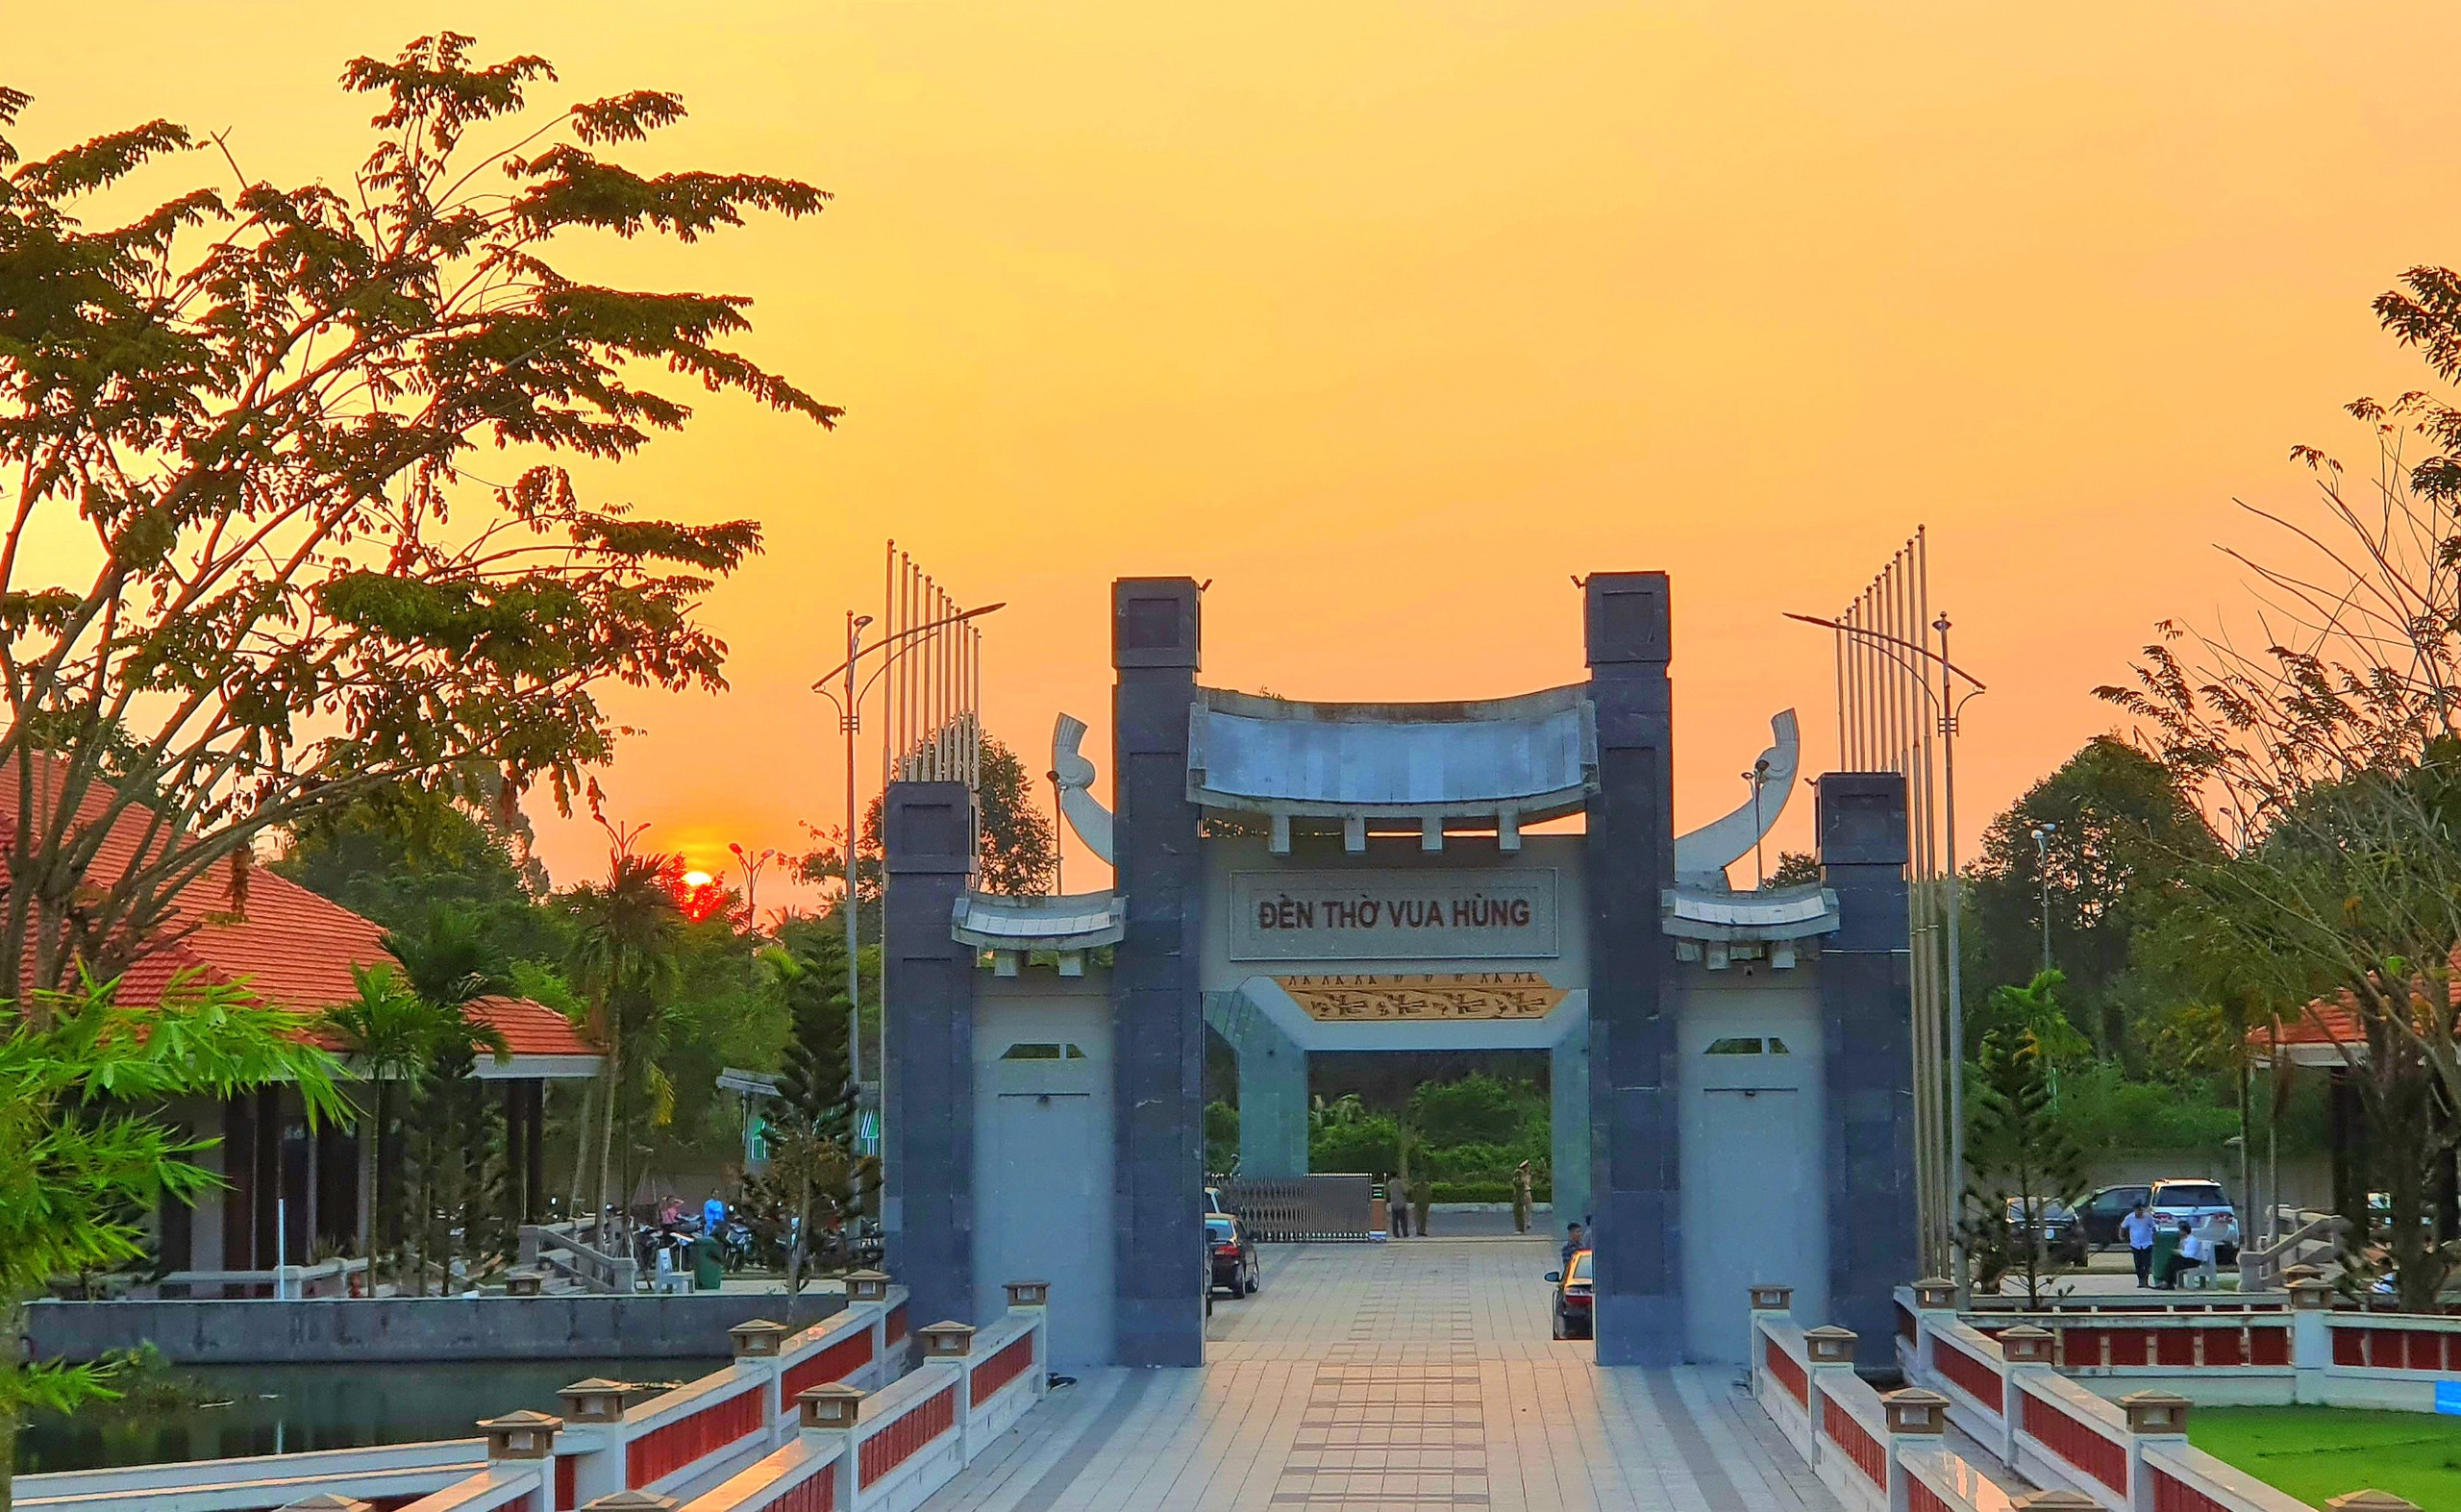 Khung cảnh bình minh tại Đền Hùng Vua Hùng TP. Cần Thơ điểm đến văn hóa thu hút người dân miền Tây Nam Bộ.